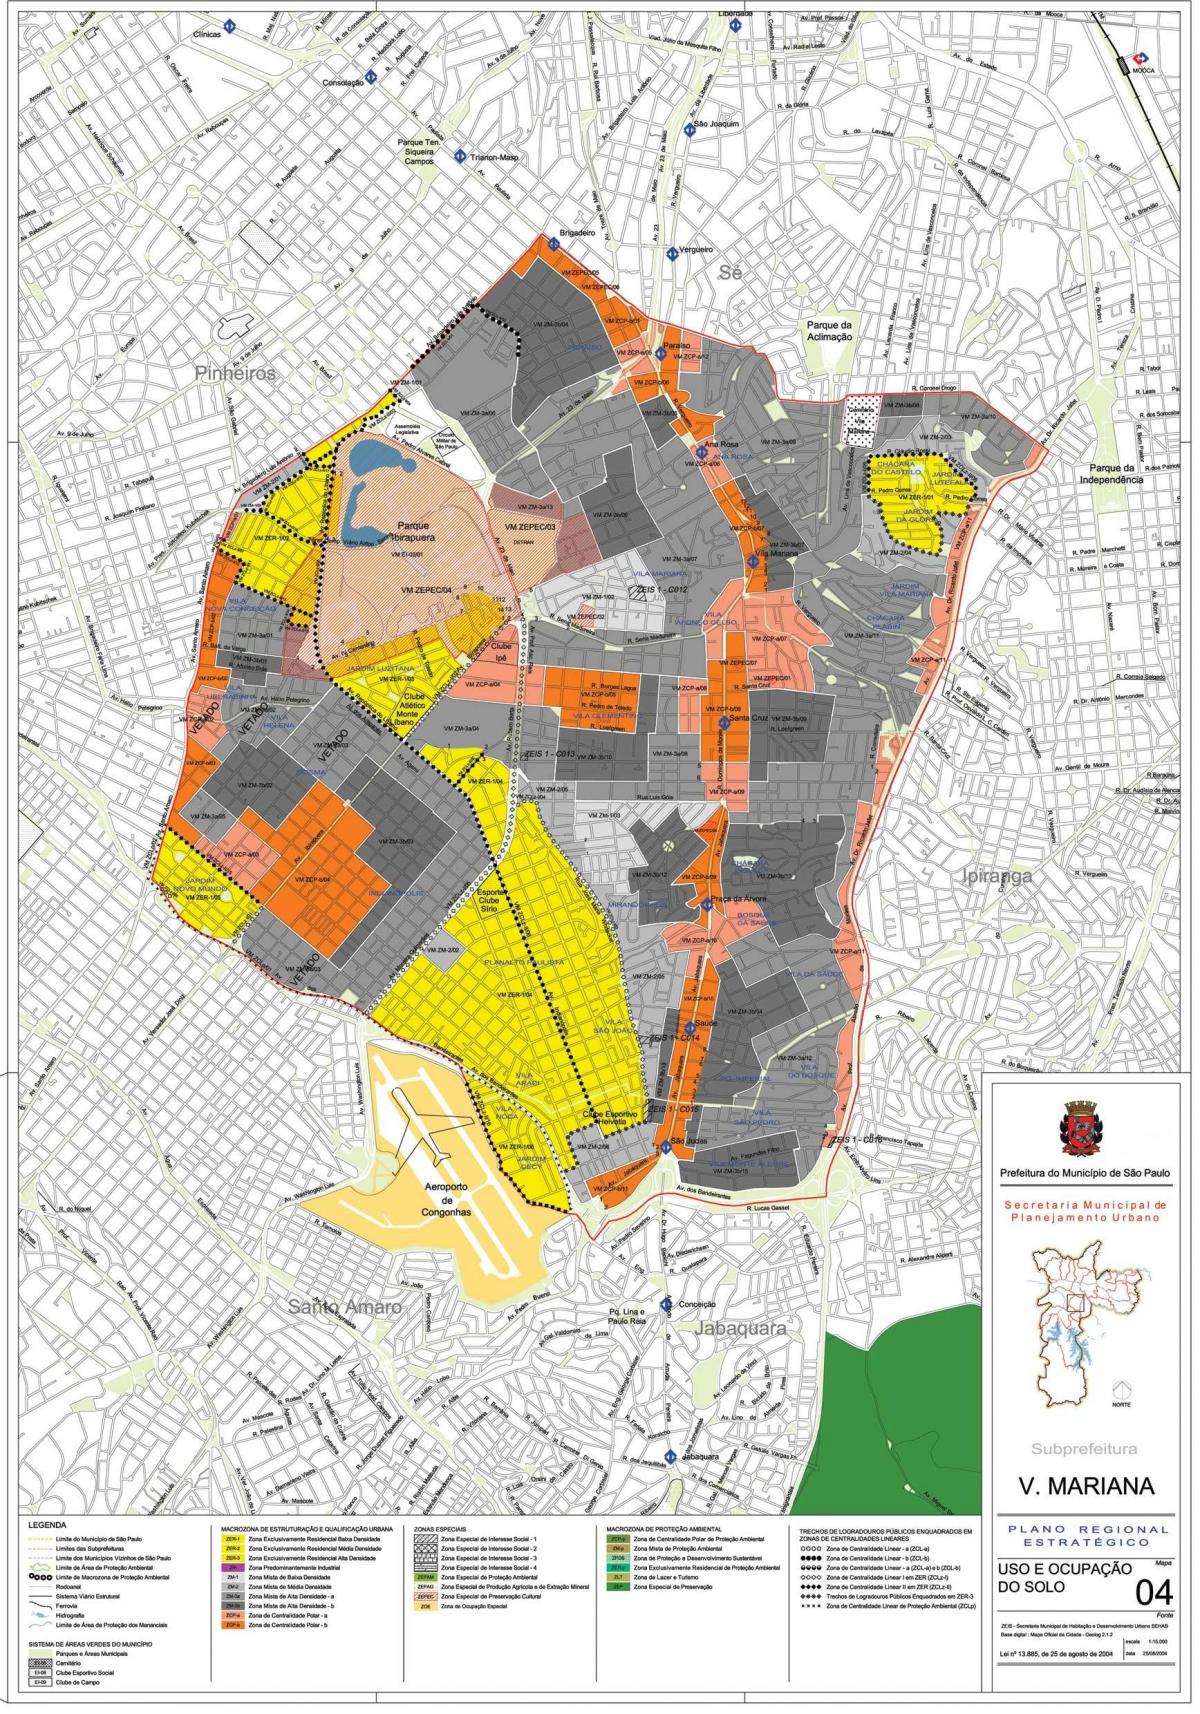 Karte von Vila Mariana, São Paulo - Besetzung der Erde